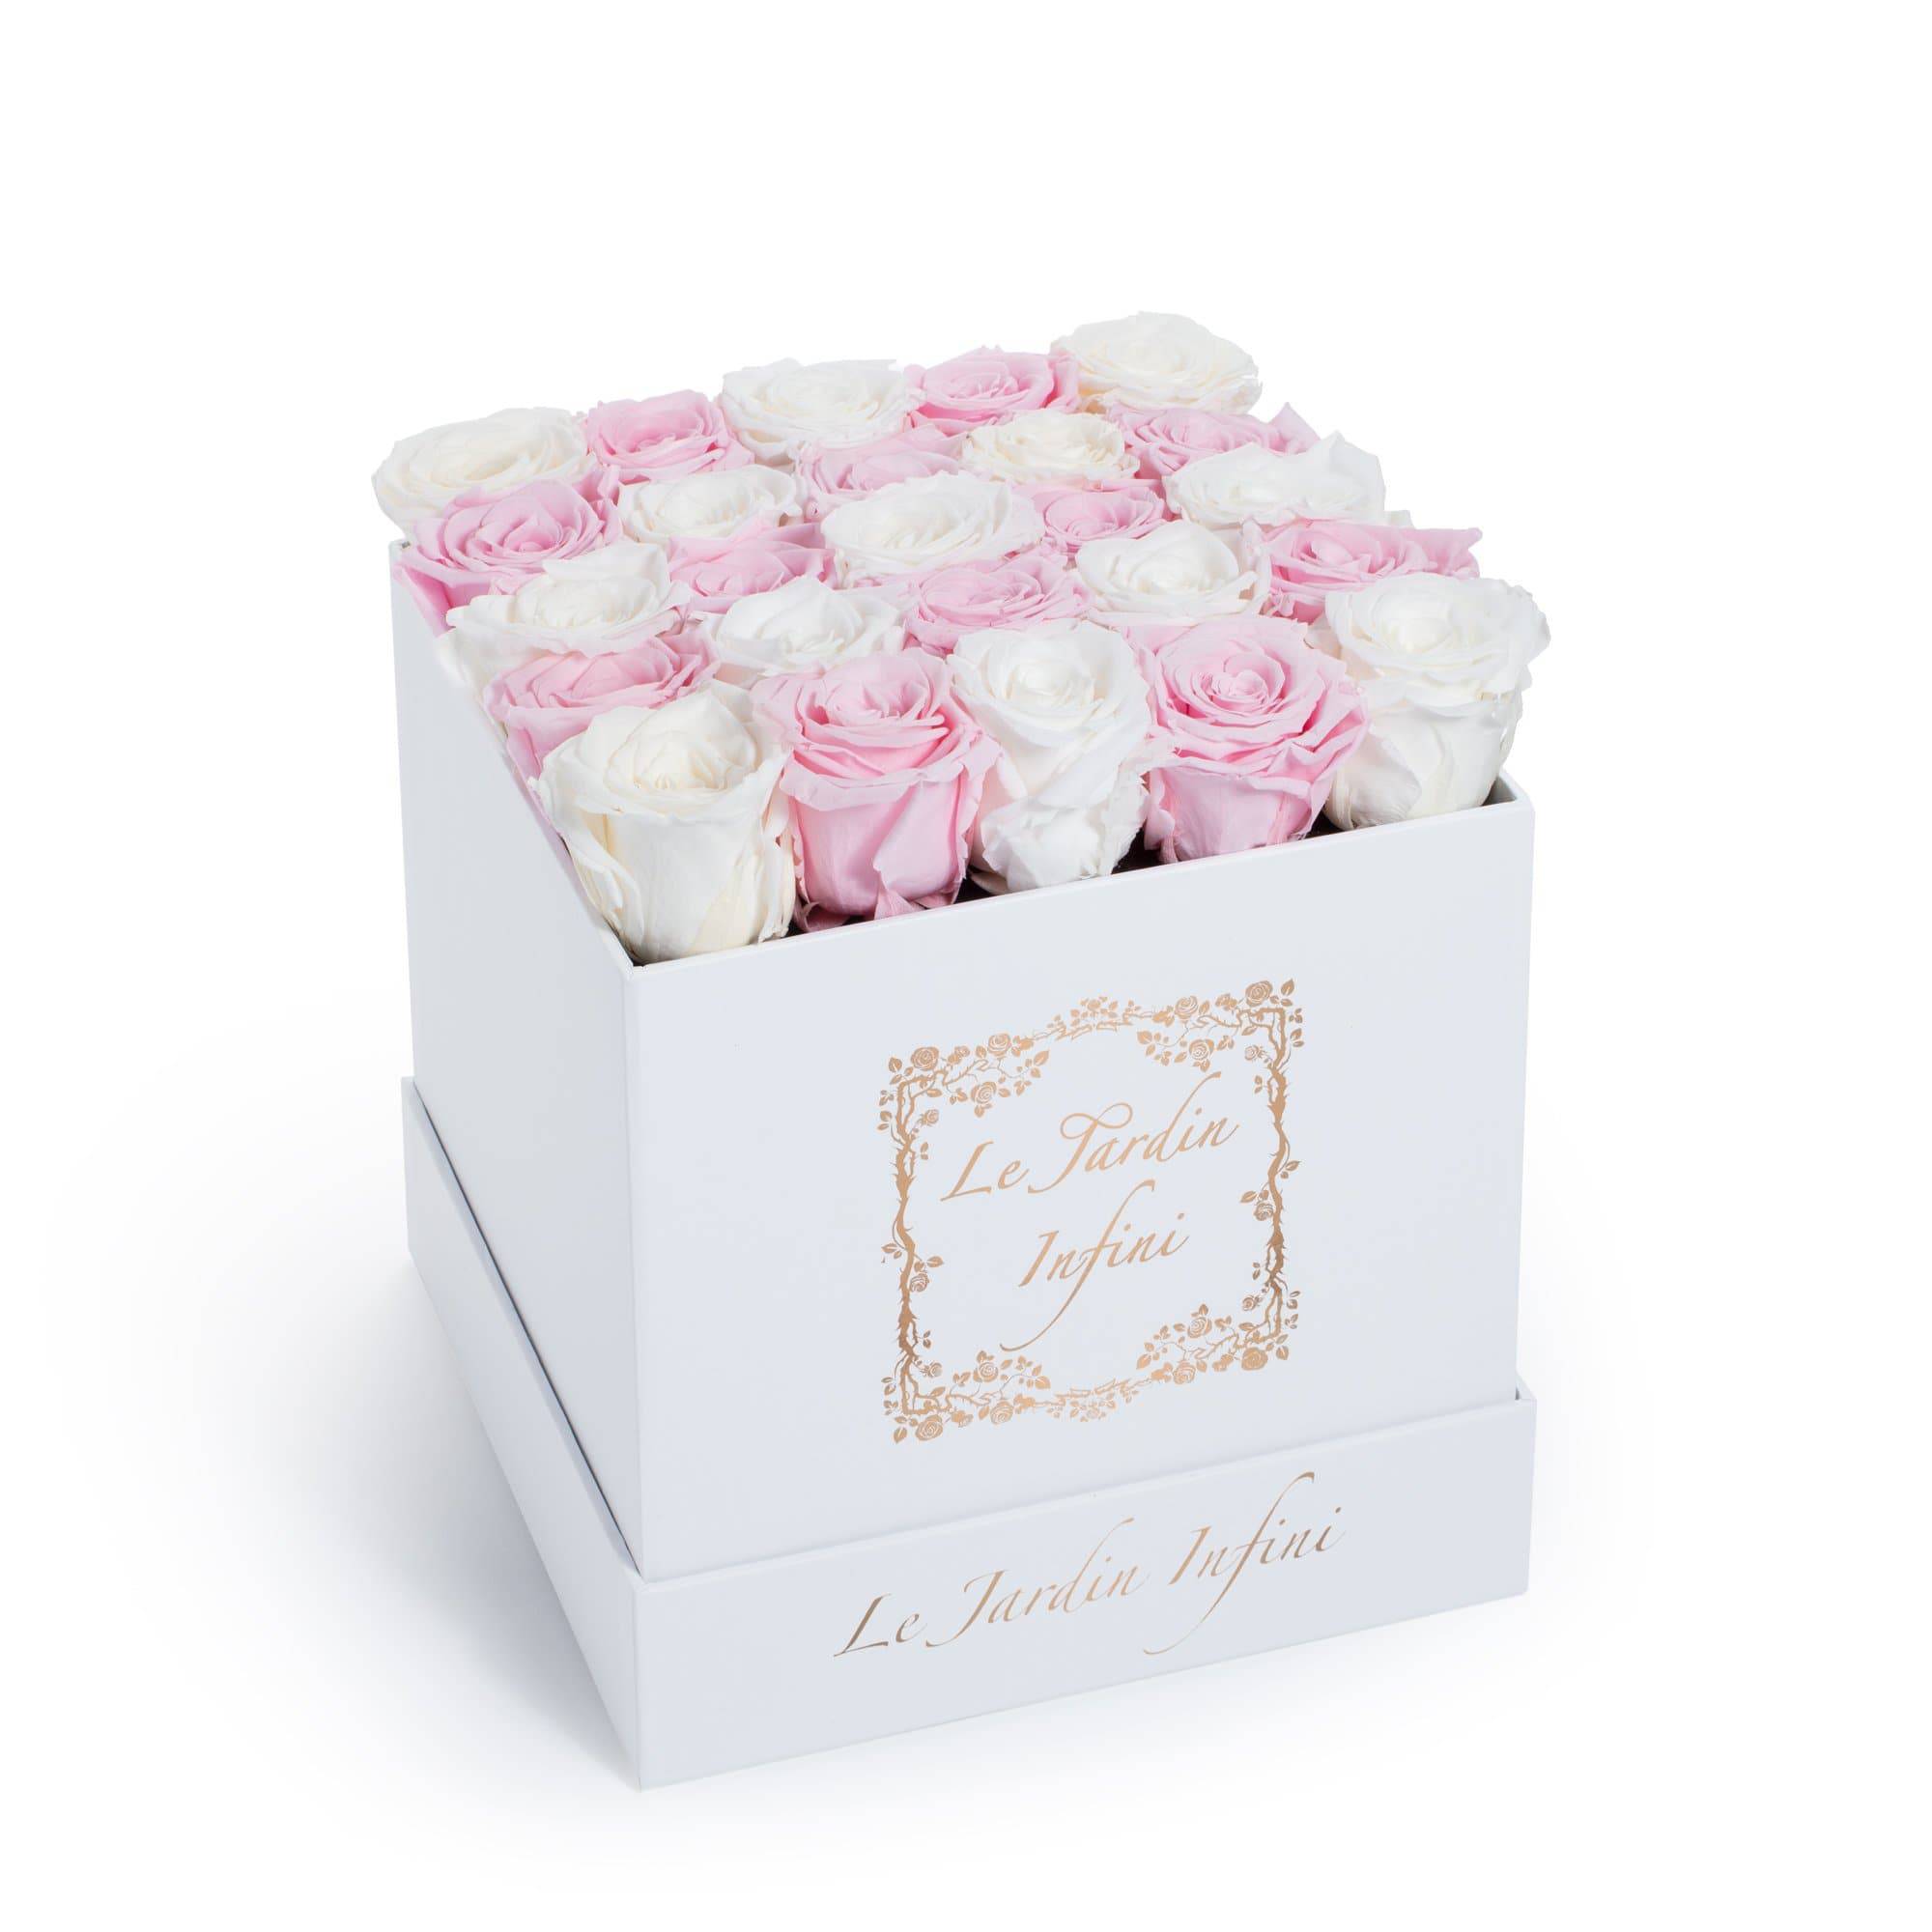 Checker White & Soft Pink Preserved Roses - Medium Square White Box